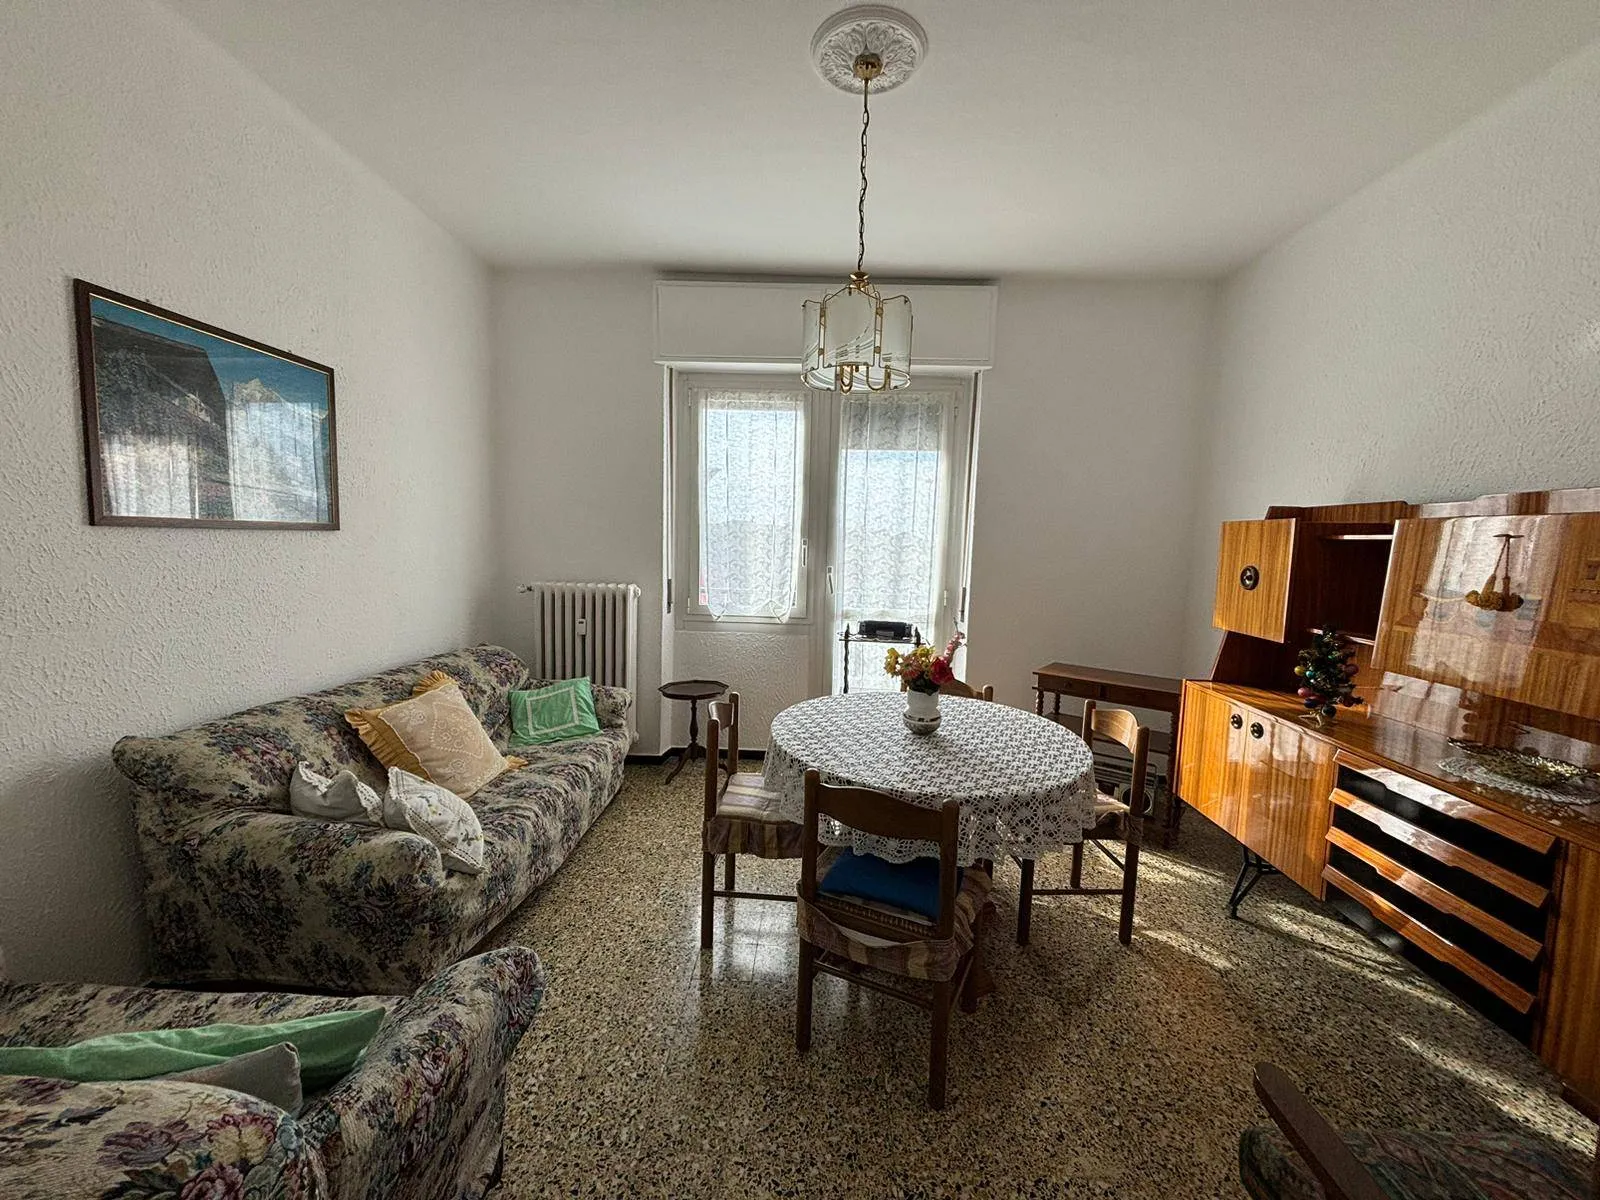 Immagine per Appartamento in vendita a Alessandria